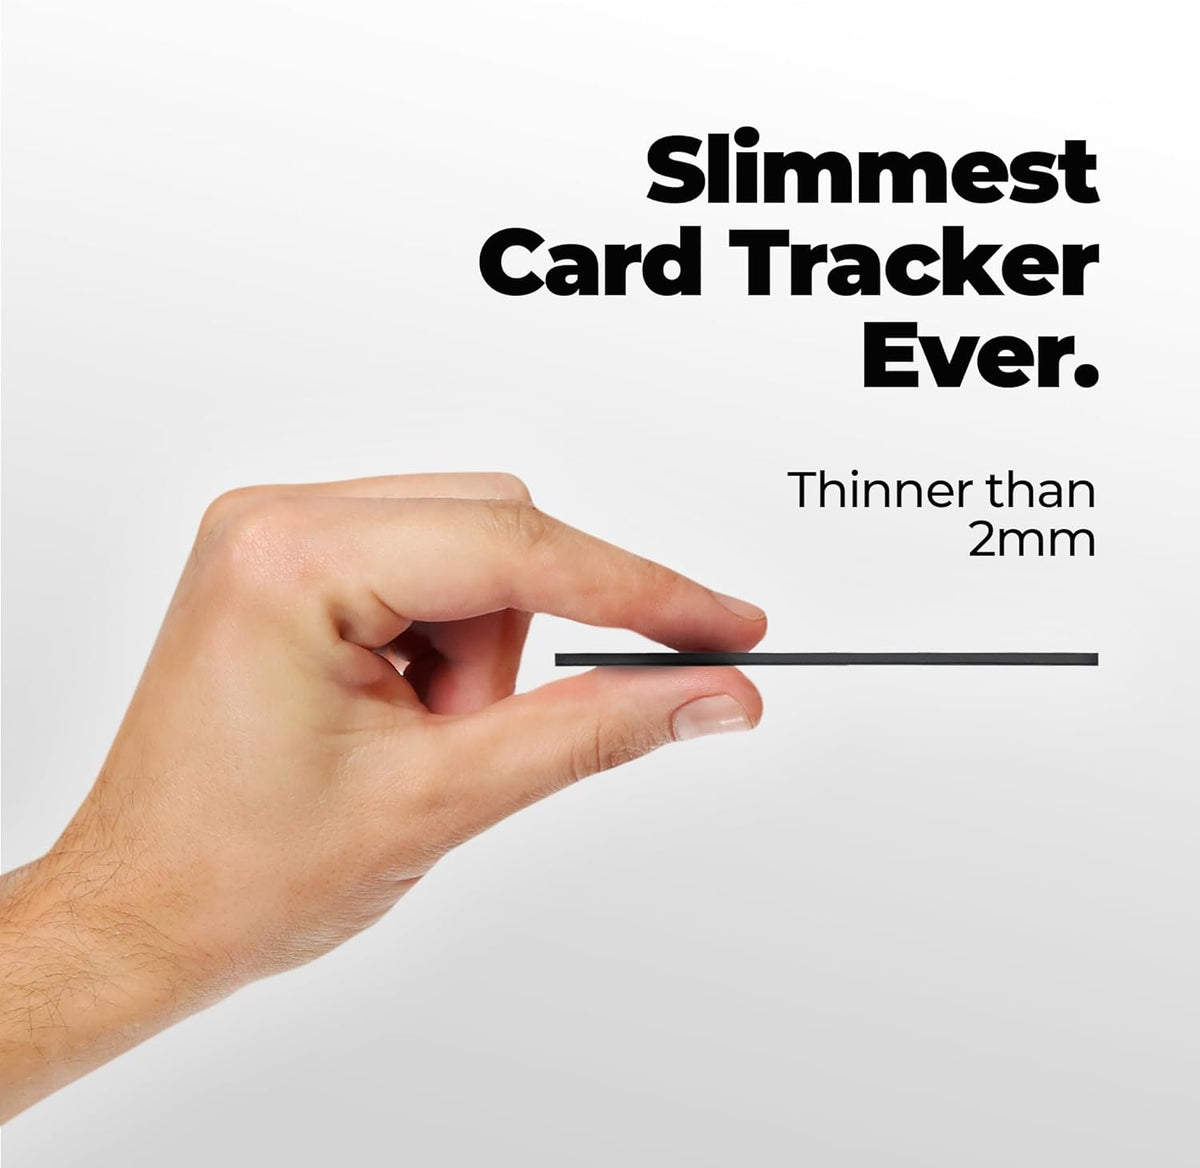 KeySmart® SmartCard Smoke | Smart Tracker | Credit Card Size